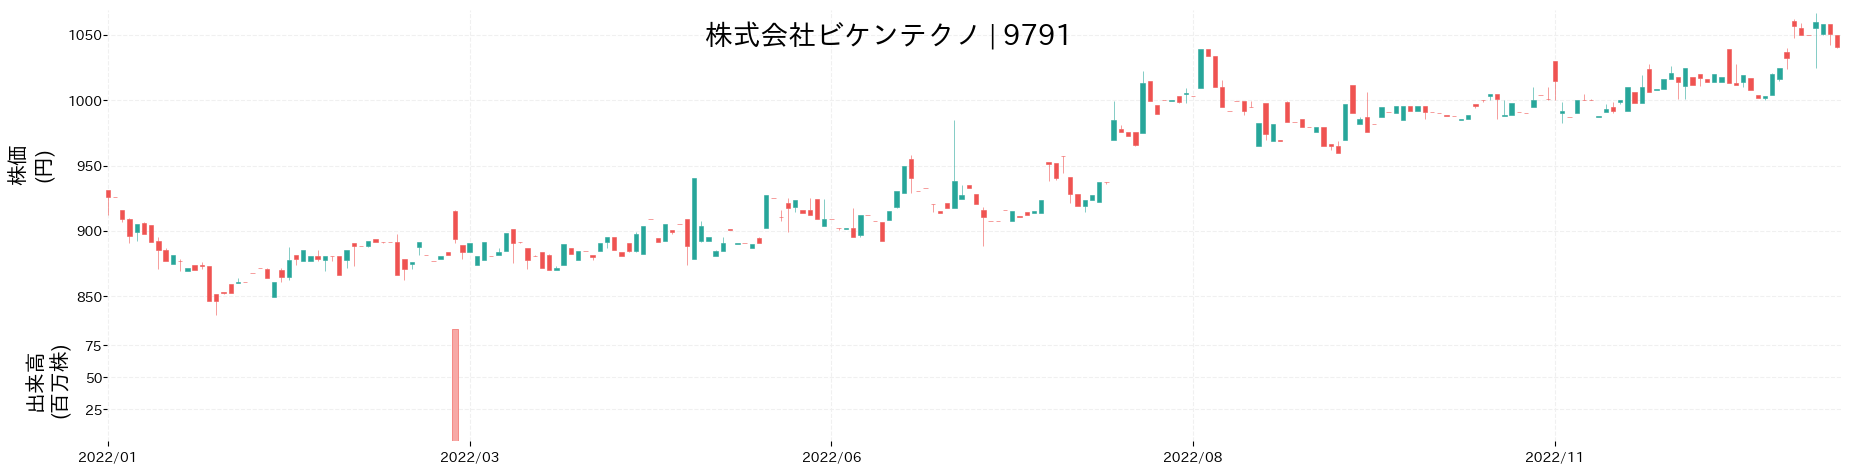 ビケンテクノの株価推移(2022)